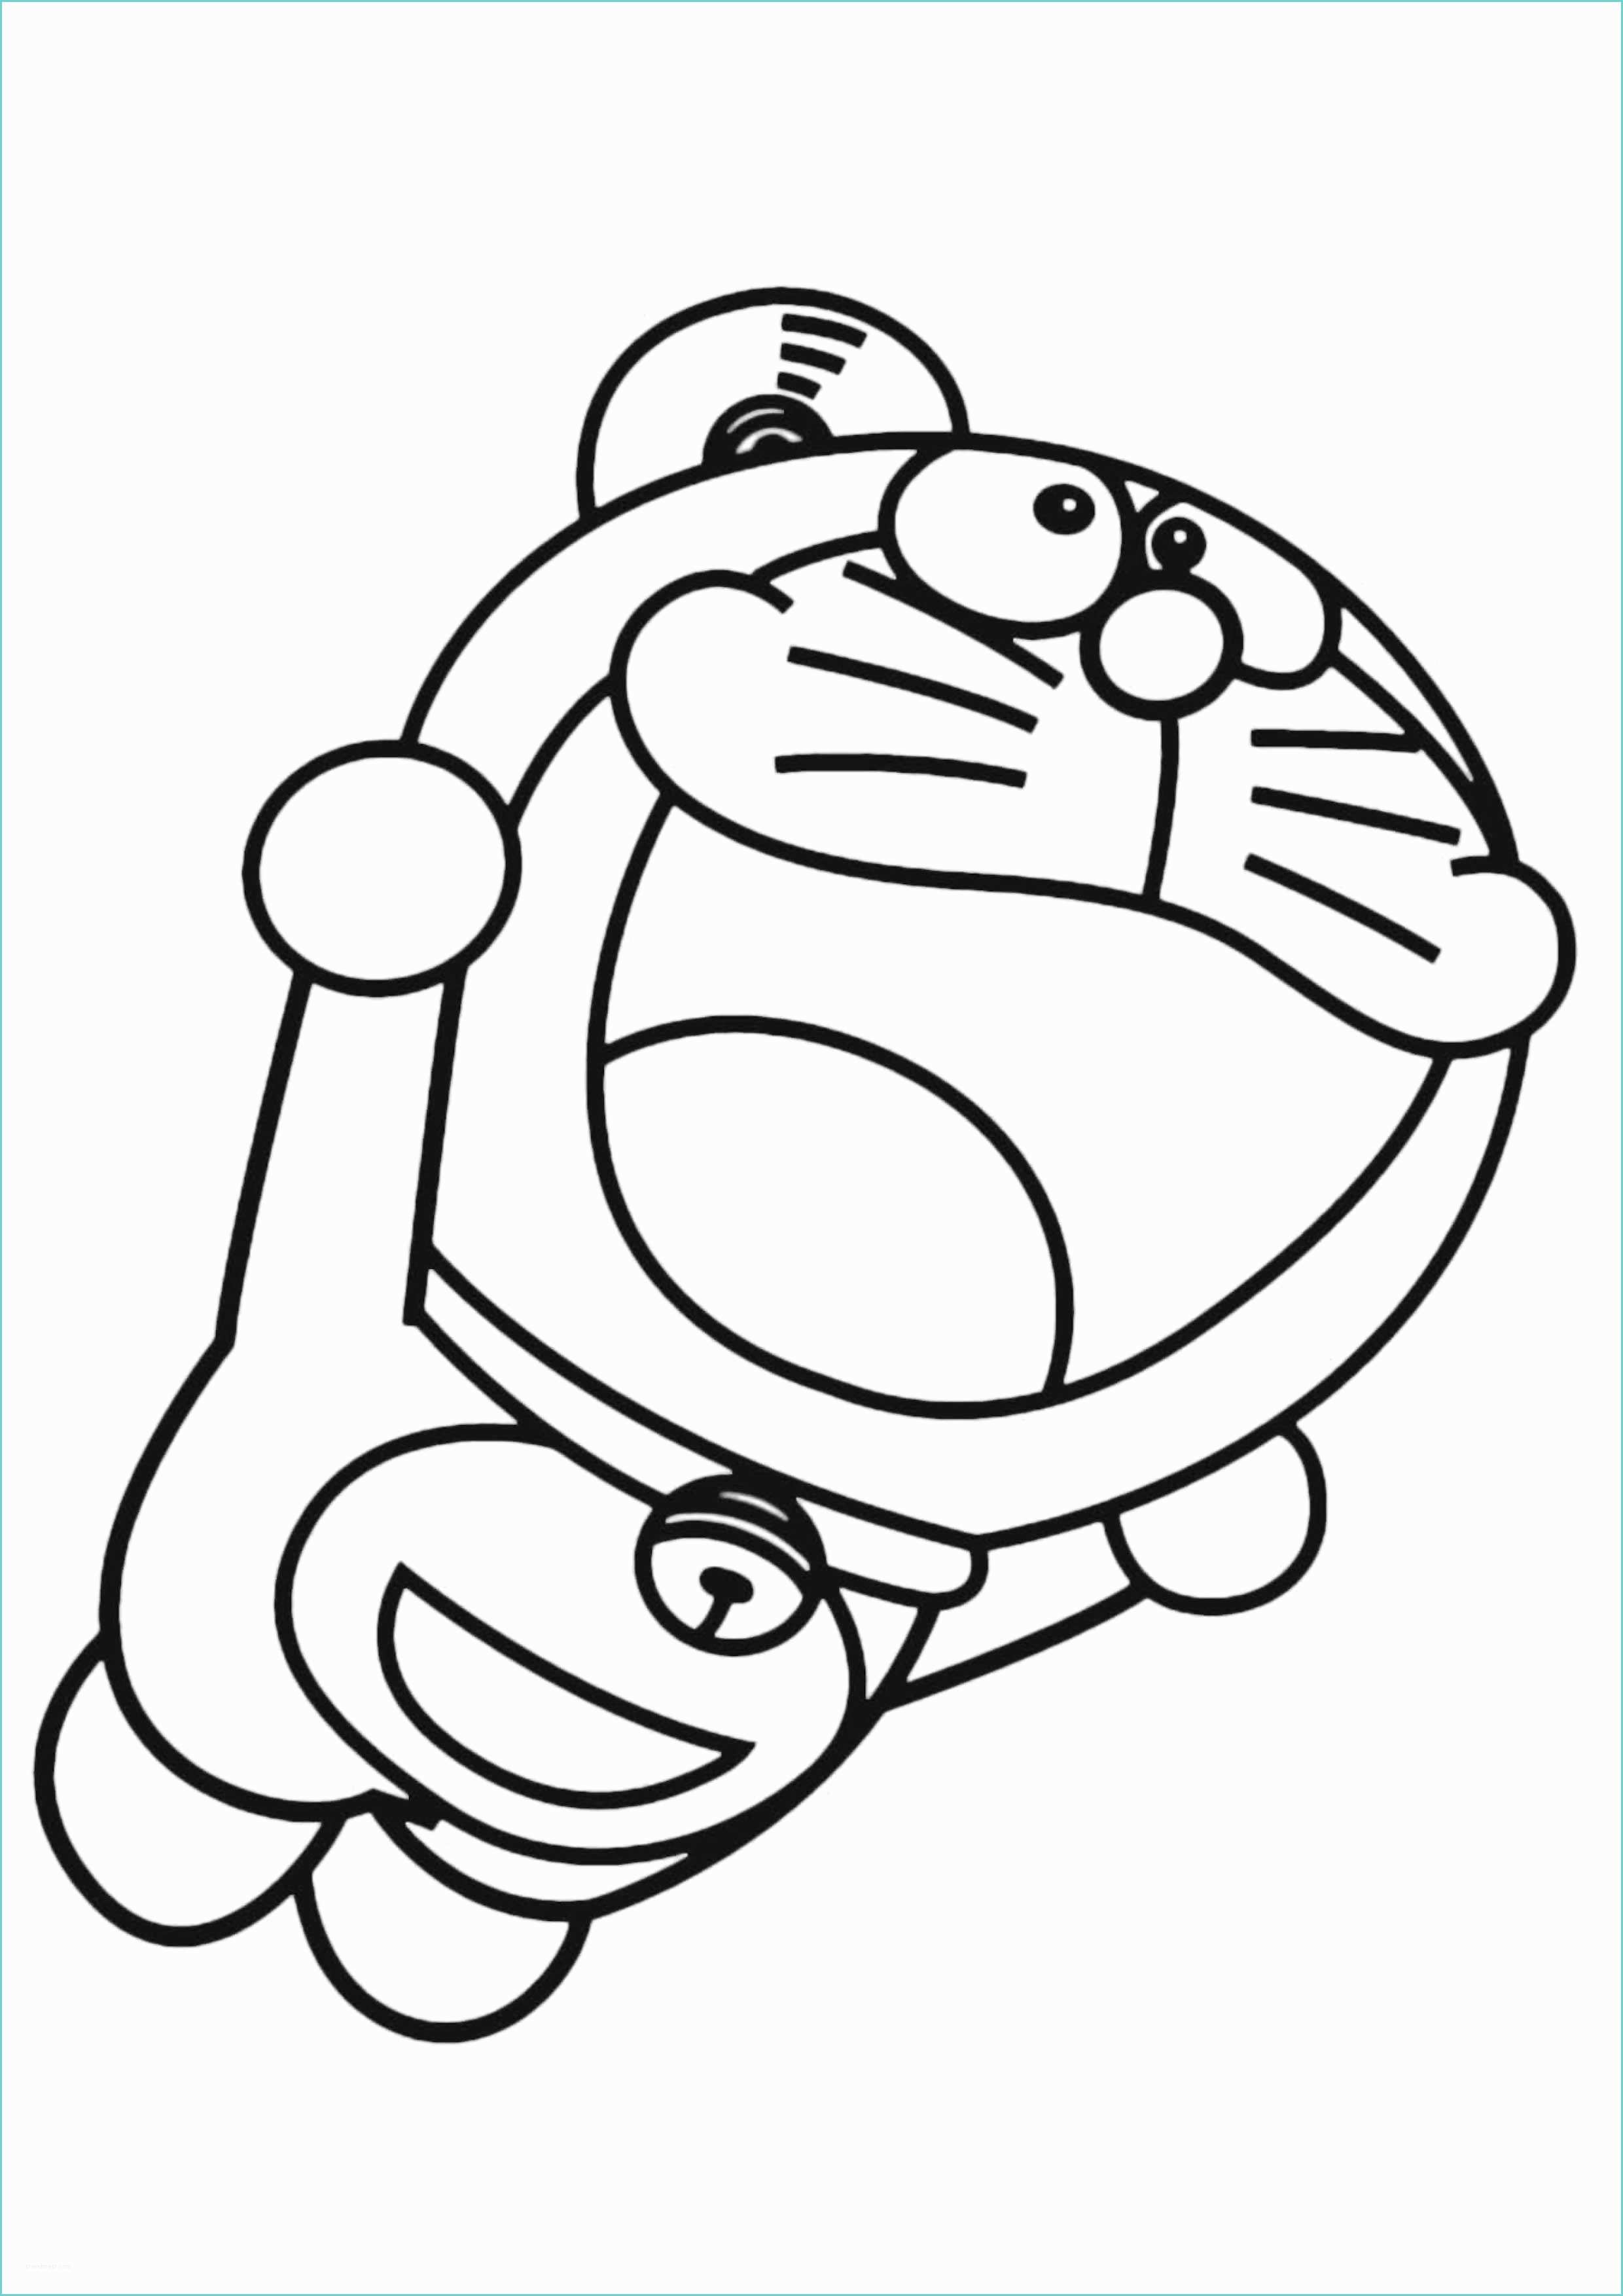 Disegni Di Doraemon 28 Disegni Di Doraemon Da Colorare